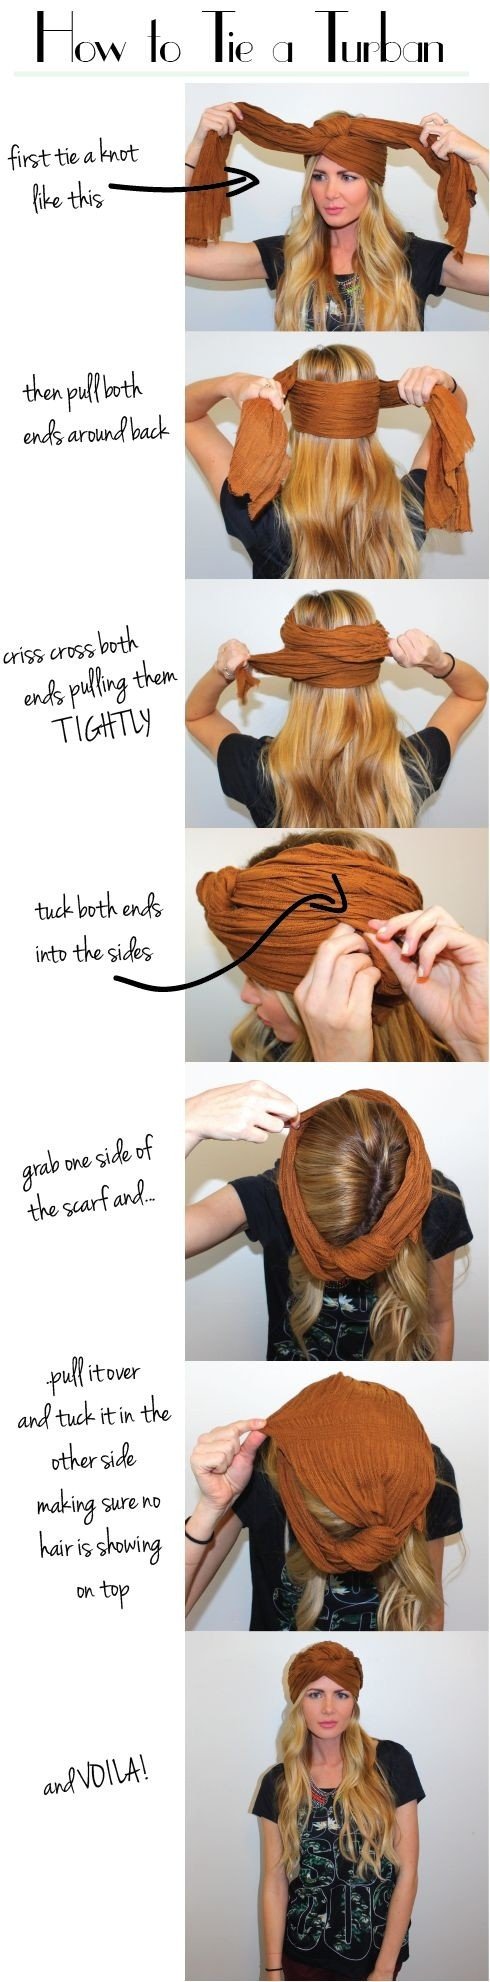 Креативные советы для укладки волос